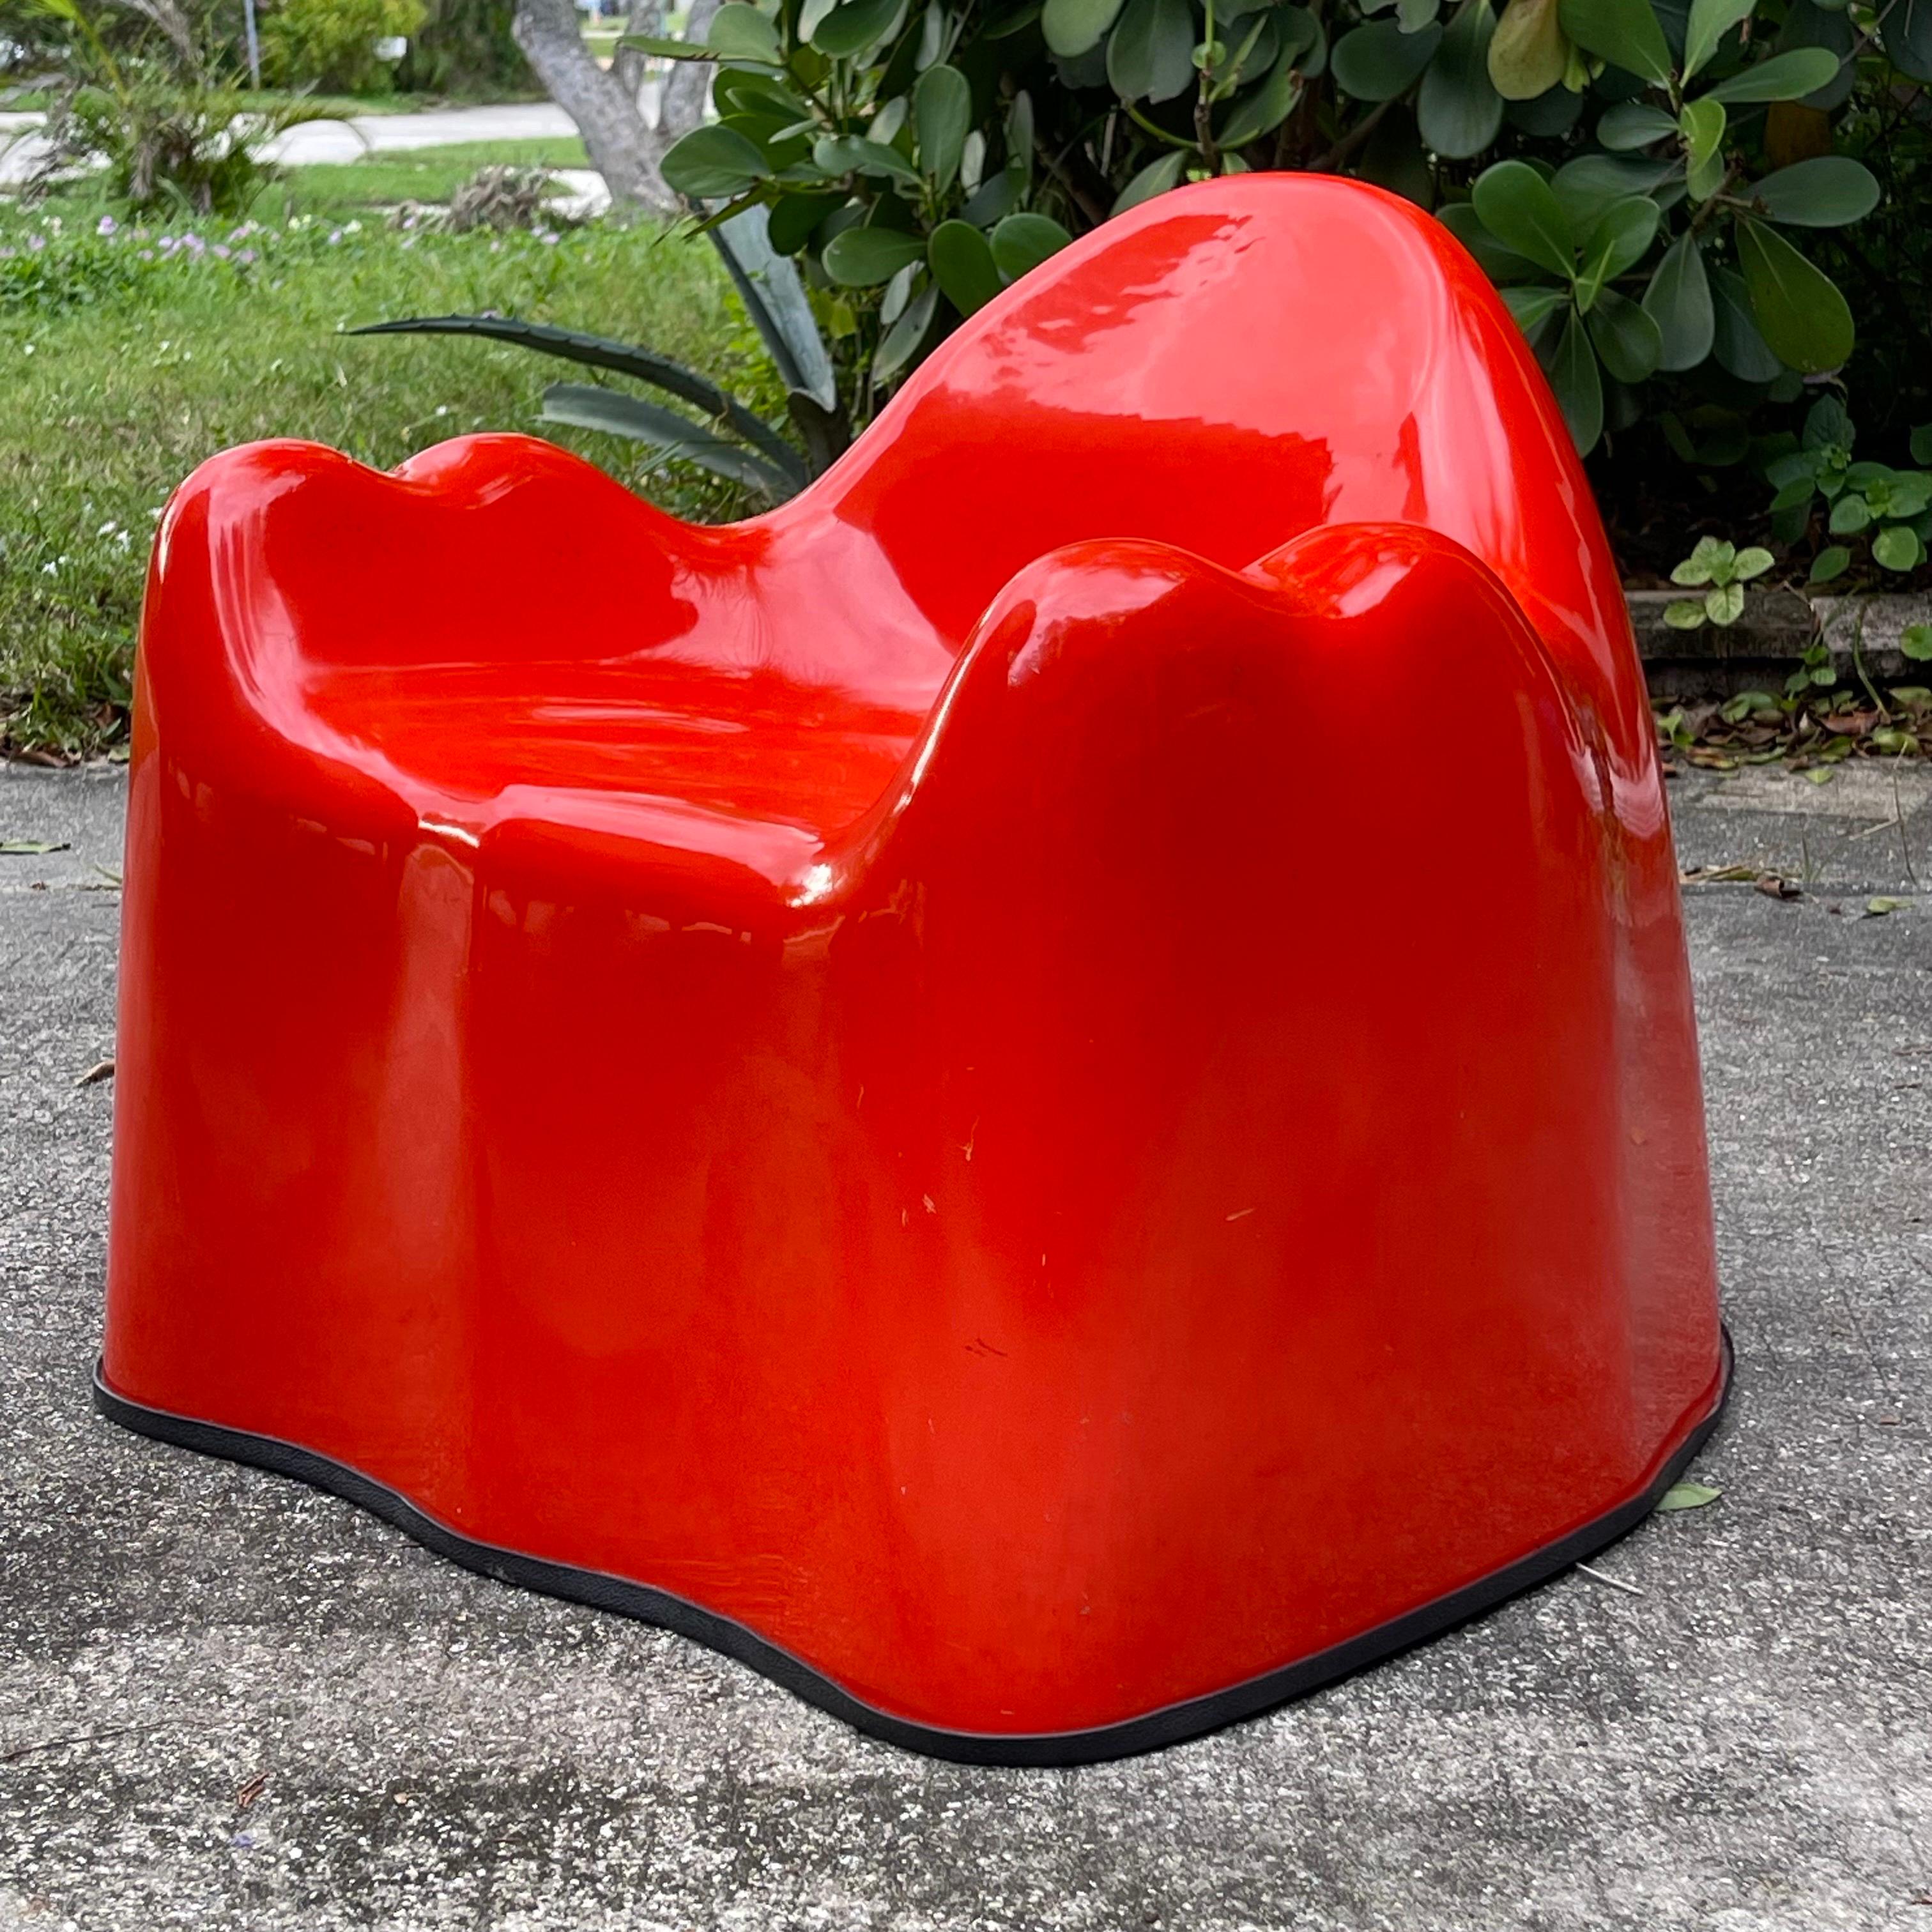 Ungewöhnliche Version von Wendell Castles legendärem Molar-Stuhl in Kindergröße. Ausgeführt in Fiberglas und rotem Gelcoat. Die Sprite-Dose dient der Vergrößerung.